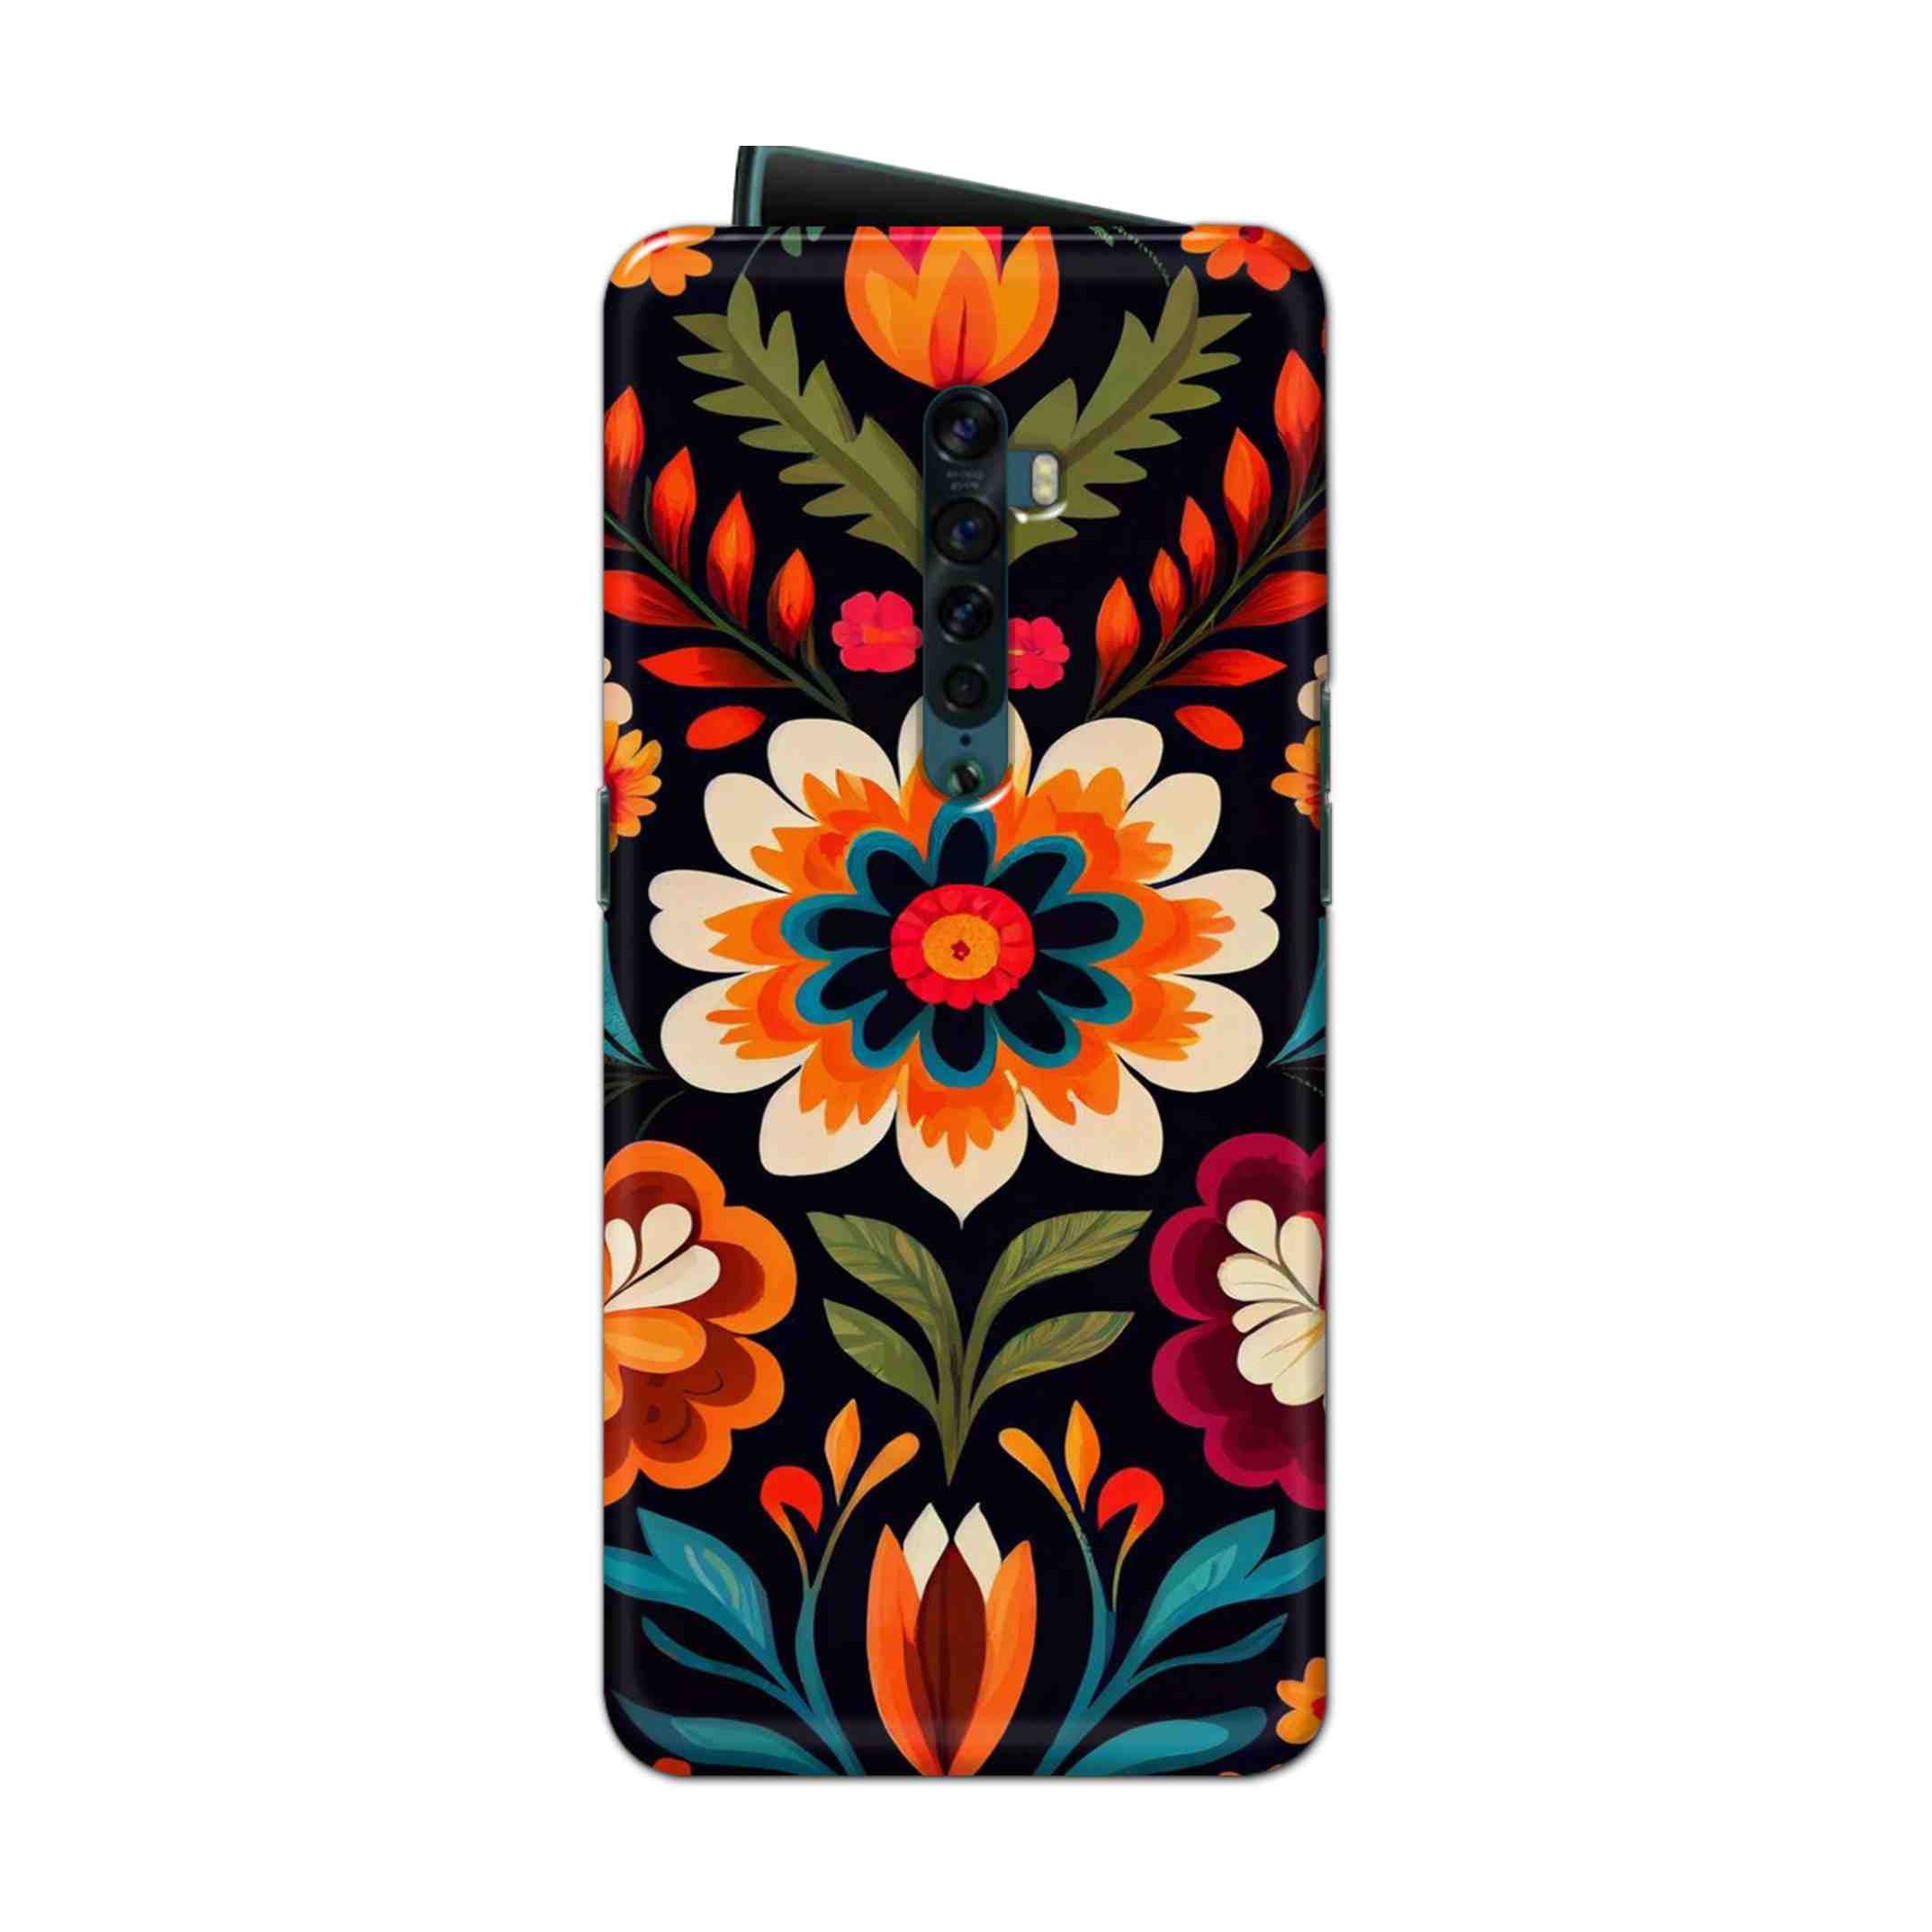 Buy Flower Hard Back Mobile Phone Case Cover For Oppo Reno 2 Online